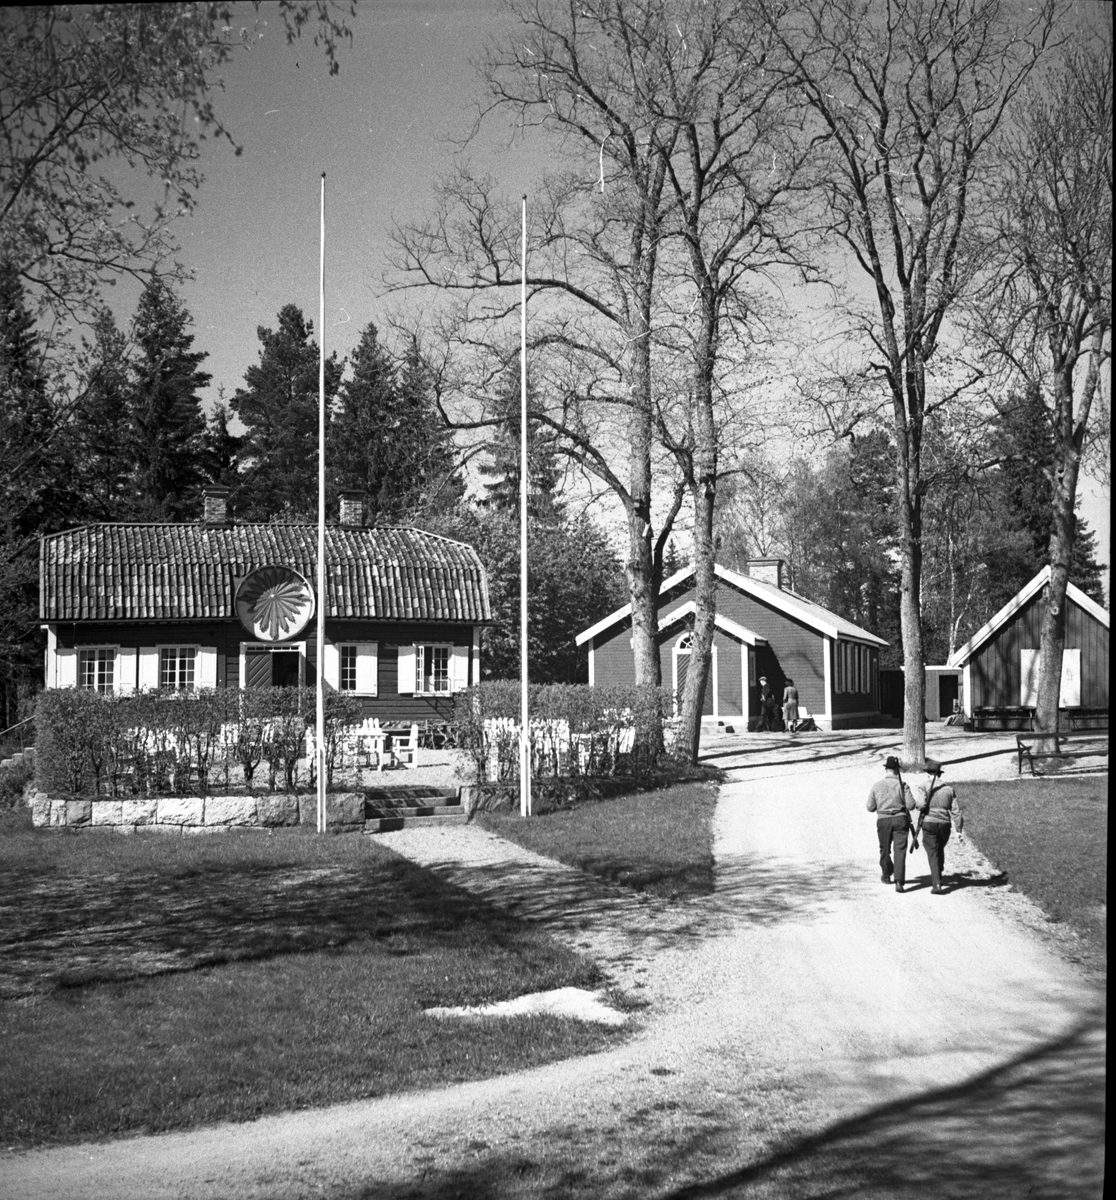 Pavaljongen, Röjningen. 1946

